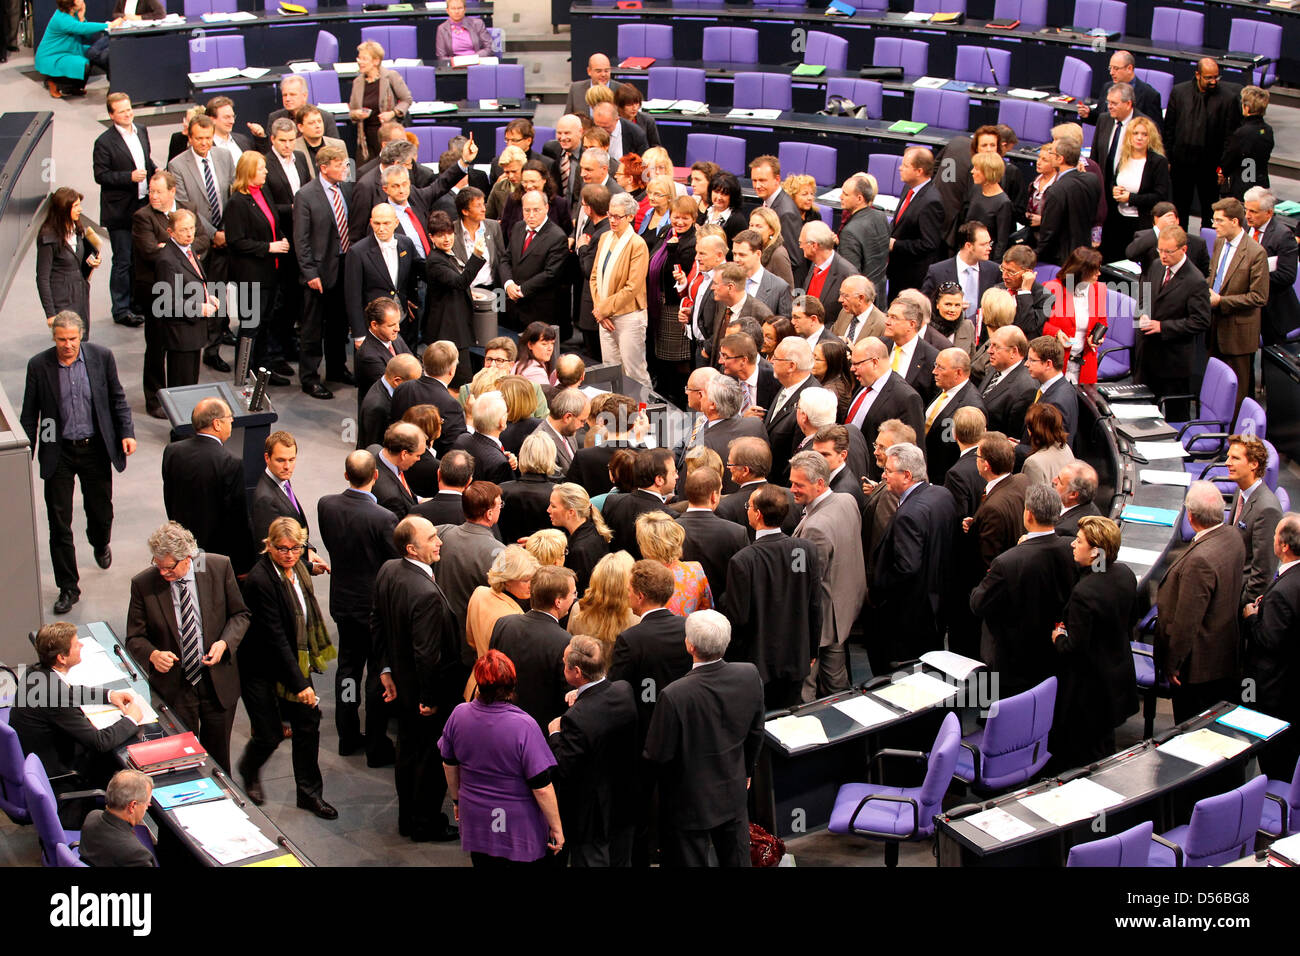 Parlamentarier stimmen ihre auf die Gesundheitsreform im Deutschen Bundestag in Berlin, Deutschland, 12. November 2010. Deutschlands Ruring Koalition weitergegeben die umstrittene Gesundheitsreform und eine neue Finanzierung der öffentlichen Krankenkasse. Foto: WOLFGANG KUMM Stockfoto